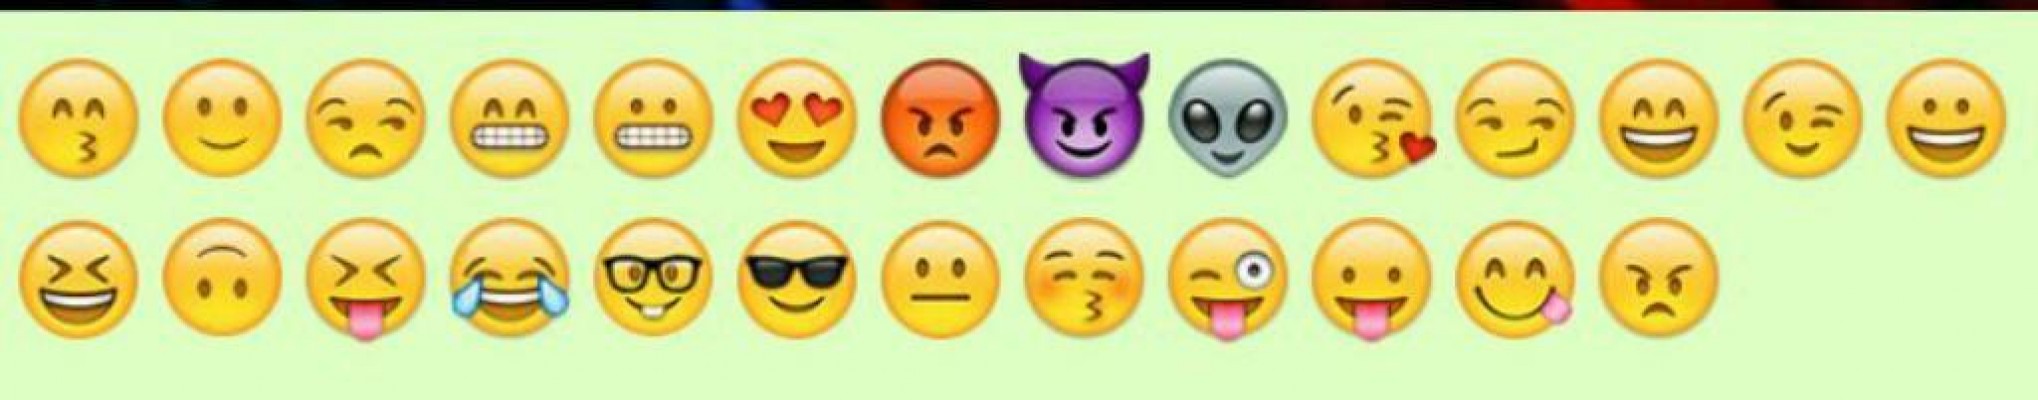 Cojines emojis